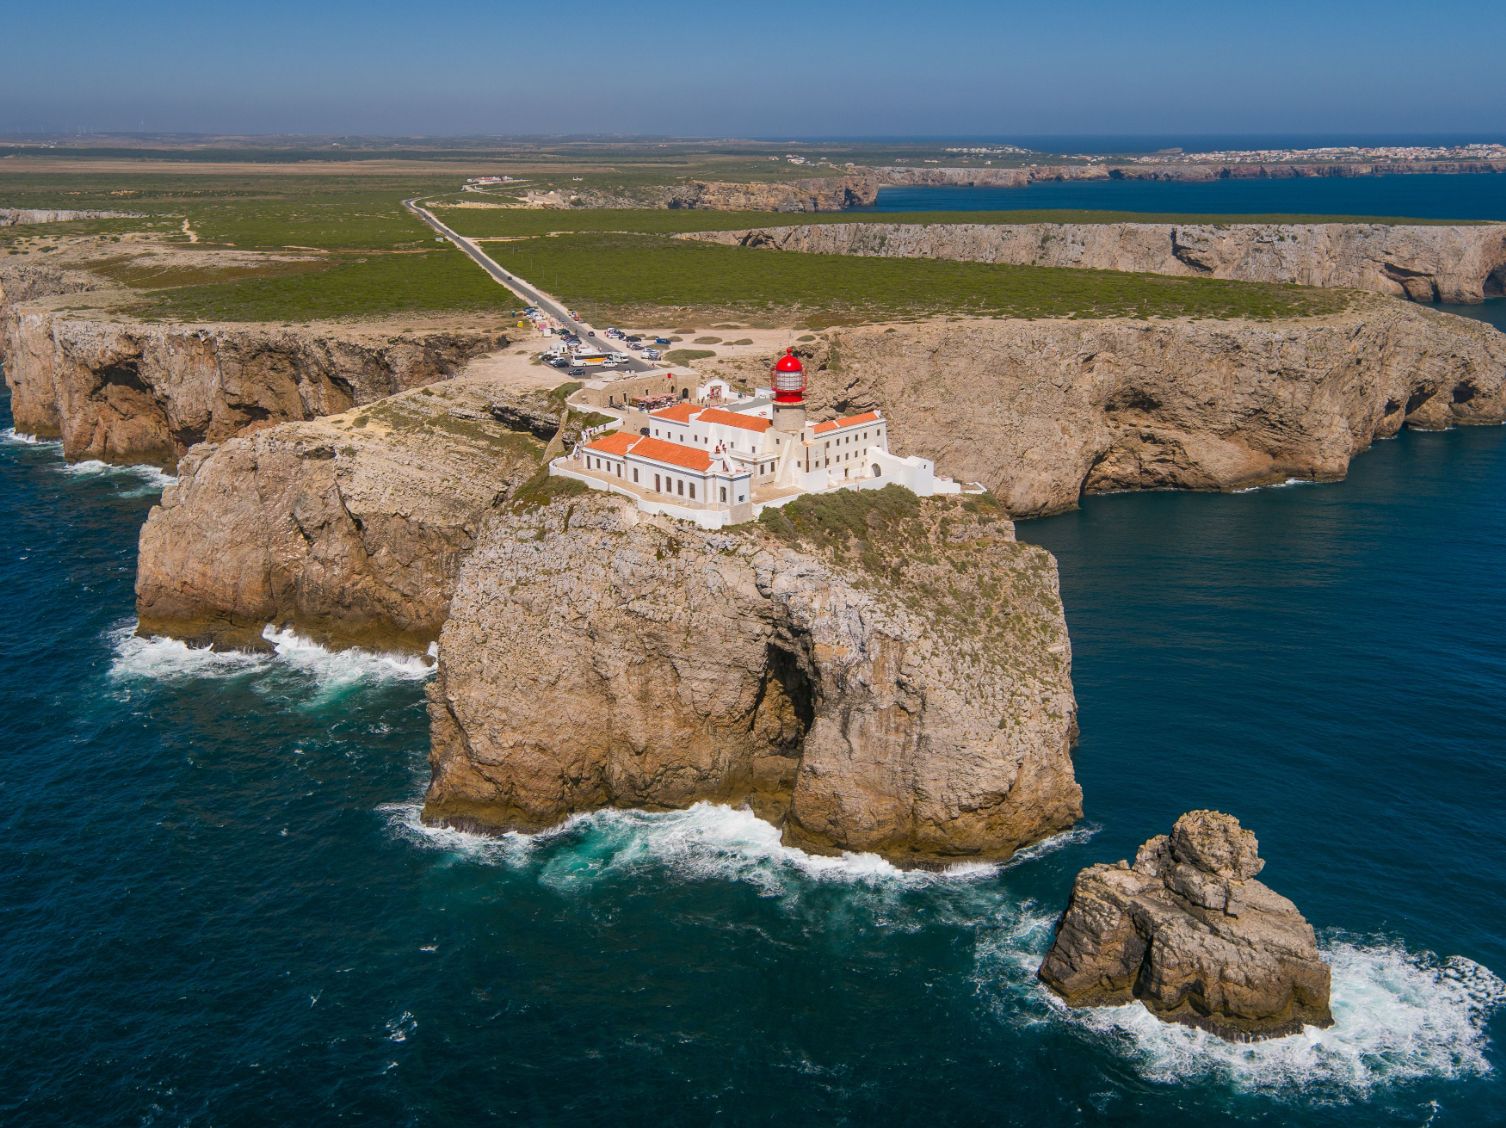 Turismo do Algarve quer tornar destino atractivo e inovador para quem o visita em contexto profissional